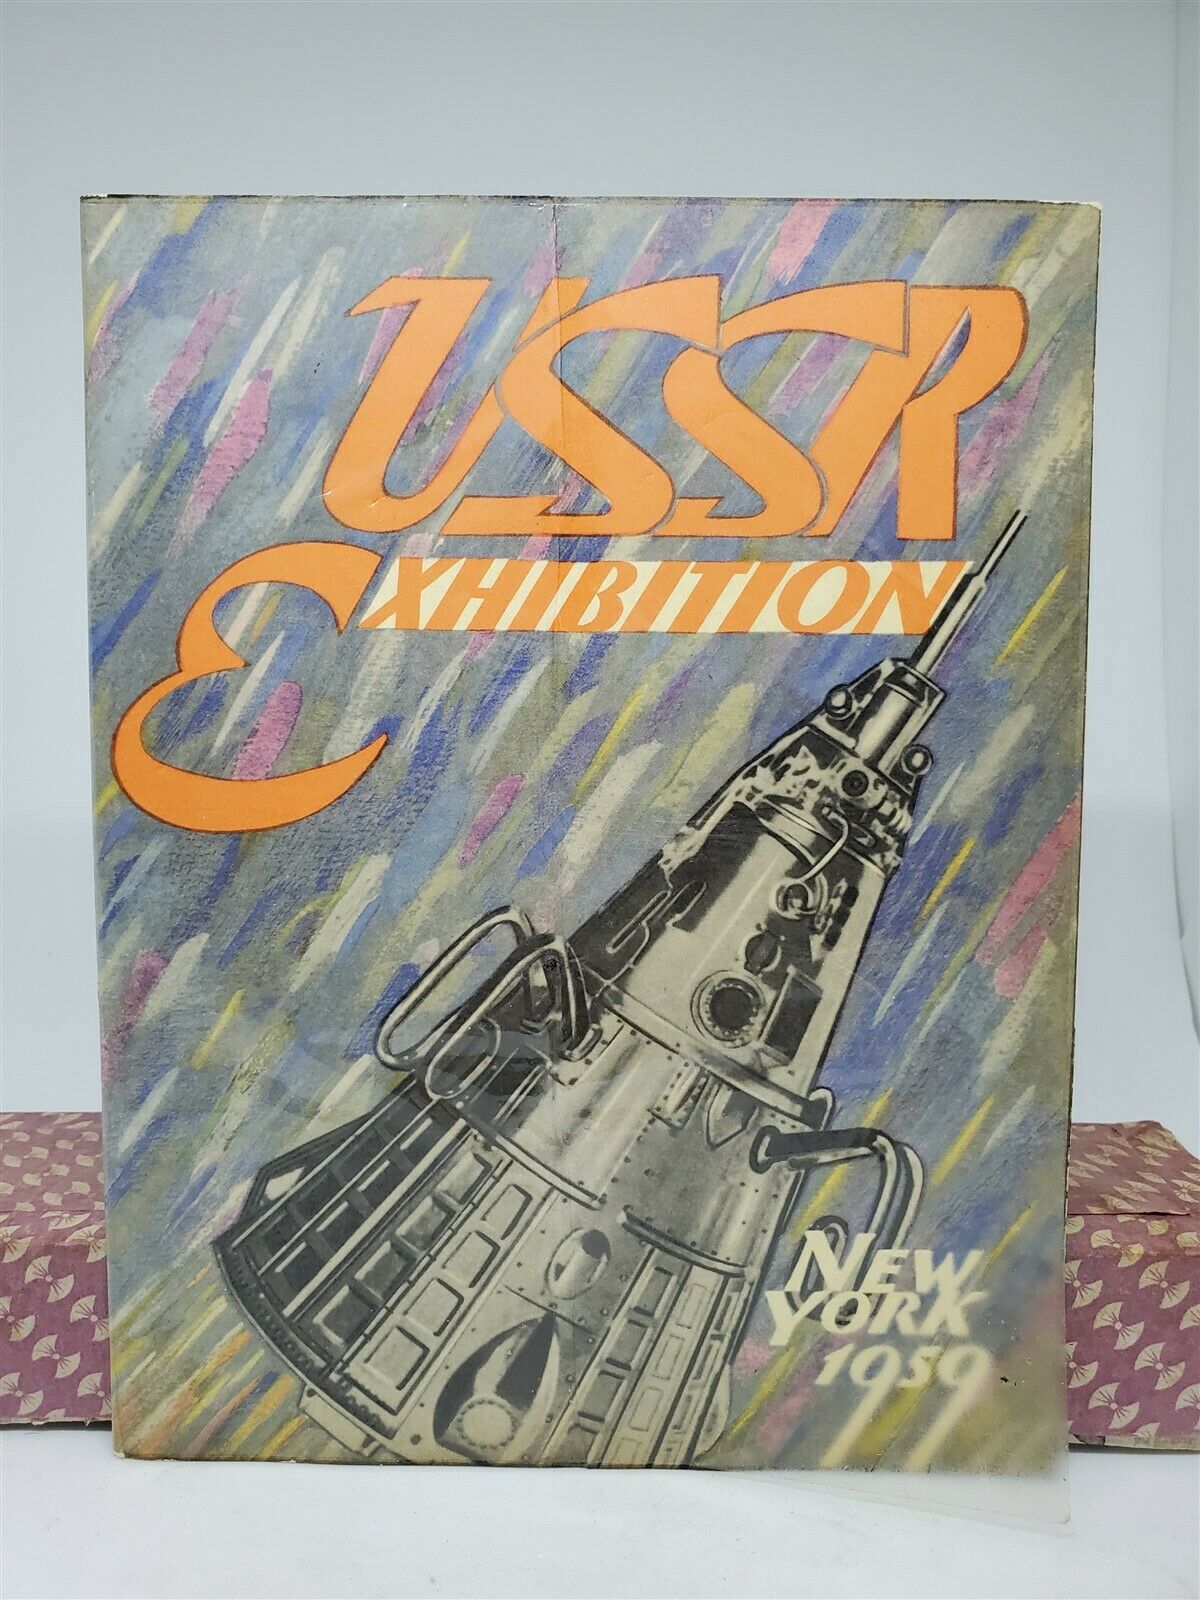 Vintage 1959 Ussr New York Exhibition Souvenir Booklet